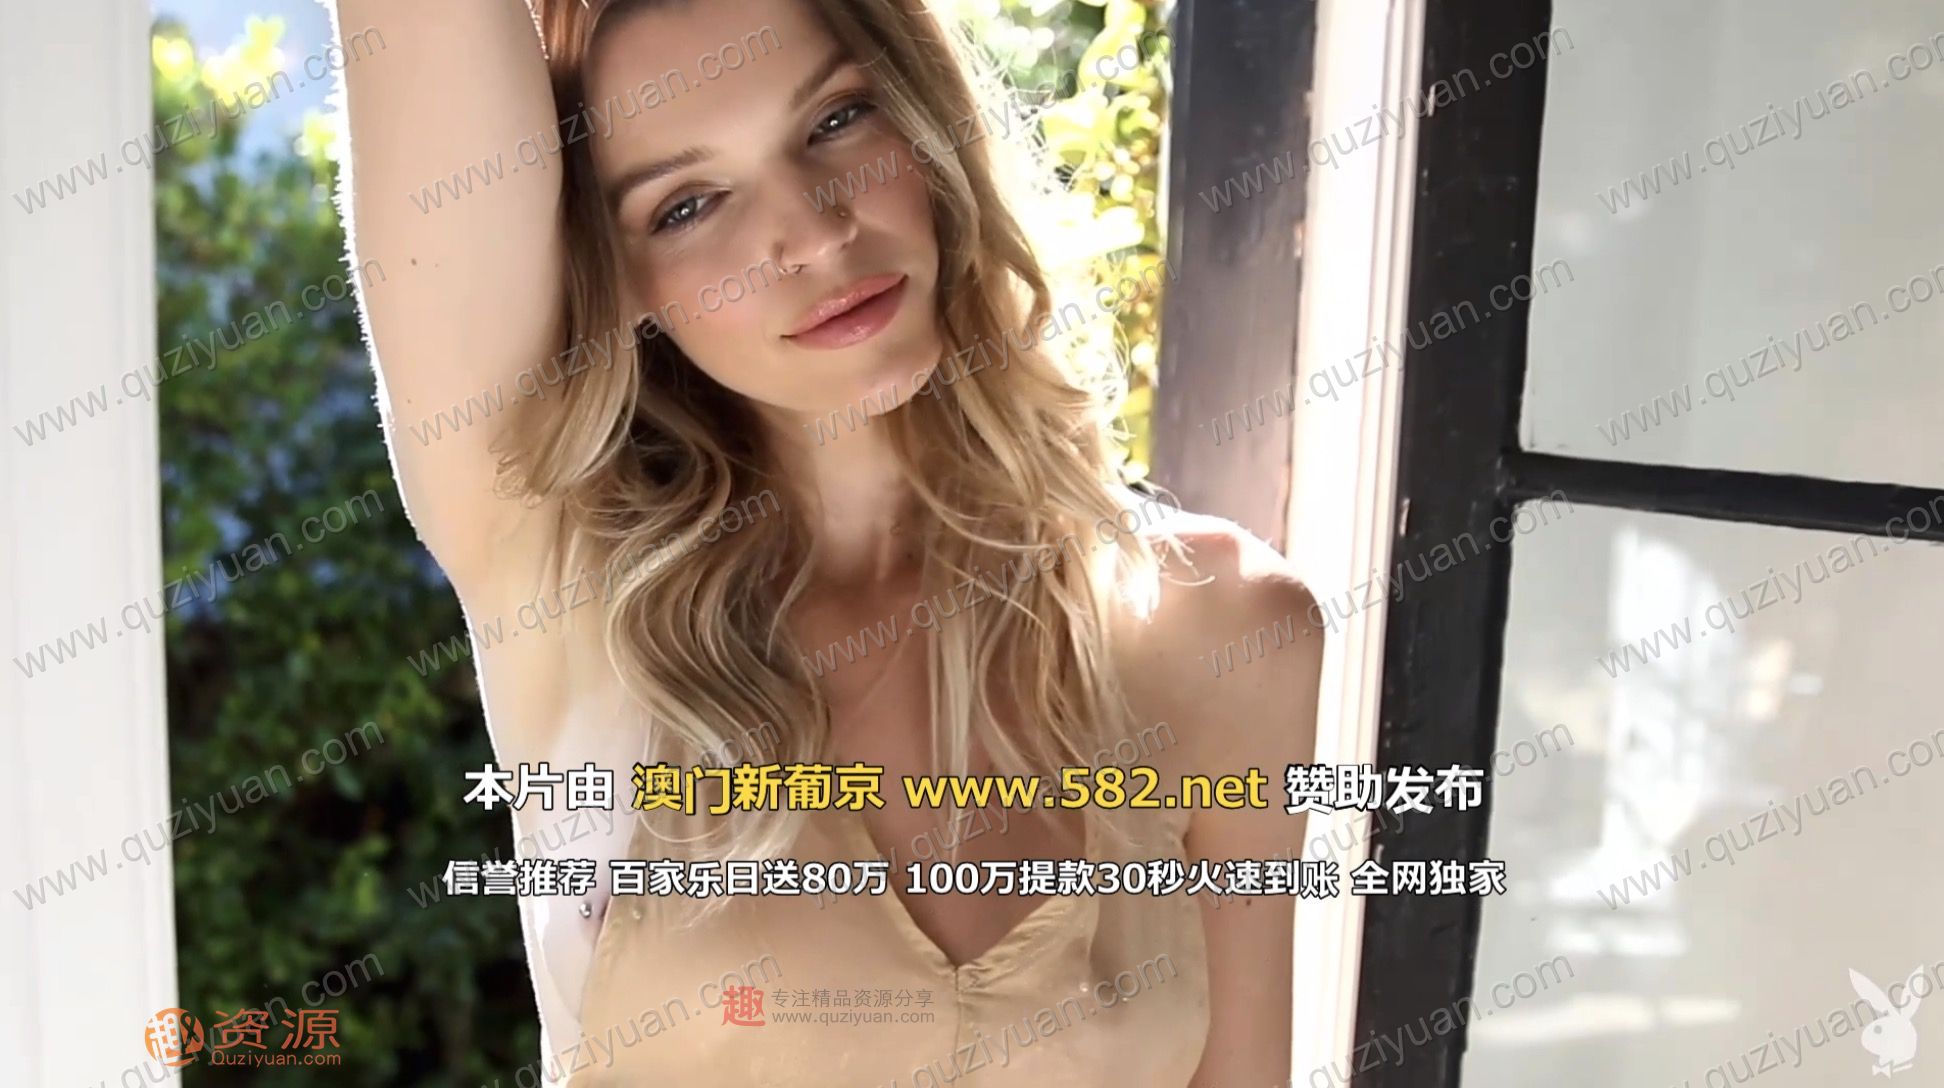 Playboy女模特加长版视频写真 百度网盘